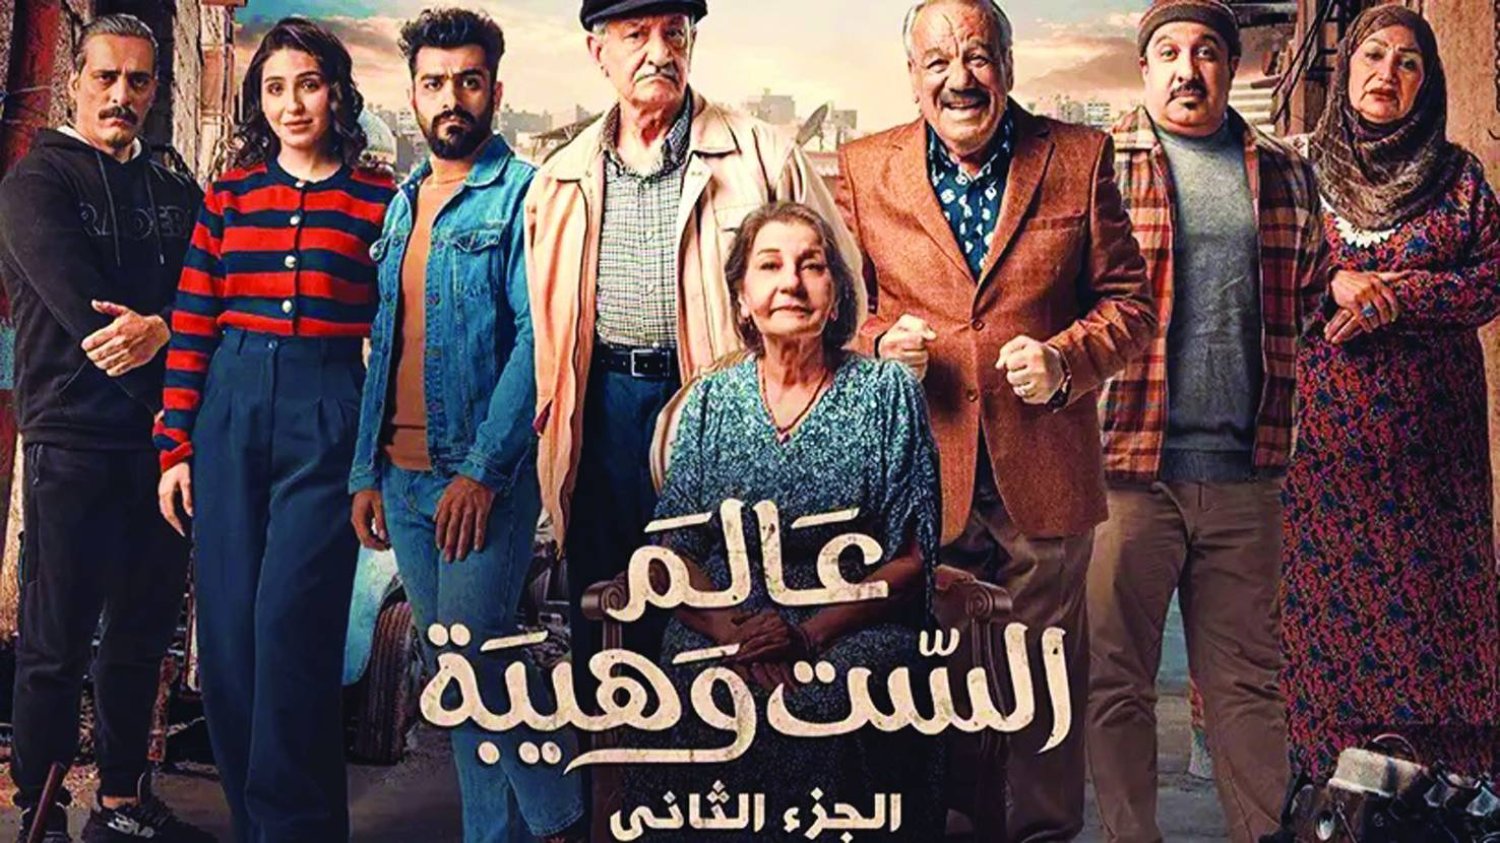 القضاء العراقي يقرر اعادة عرض مسلسل "عالم الست وهيبة" الجزء الثاني